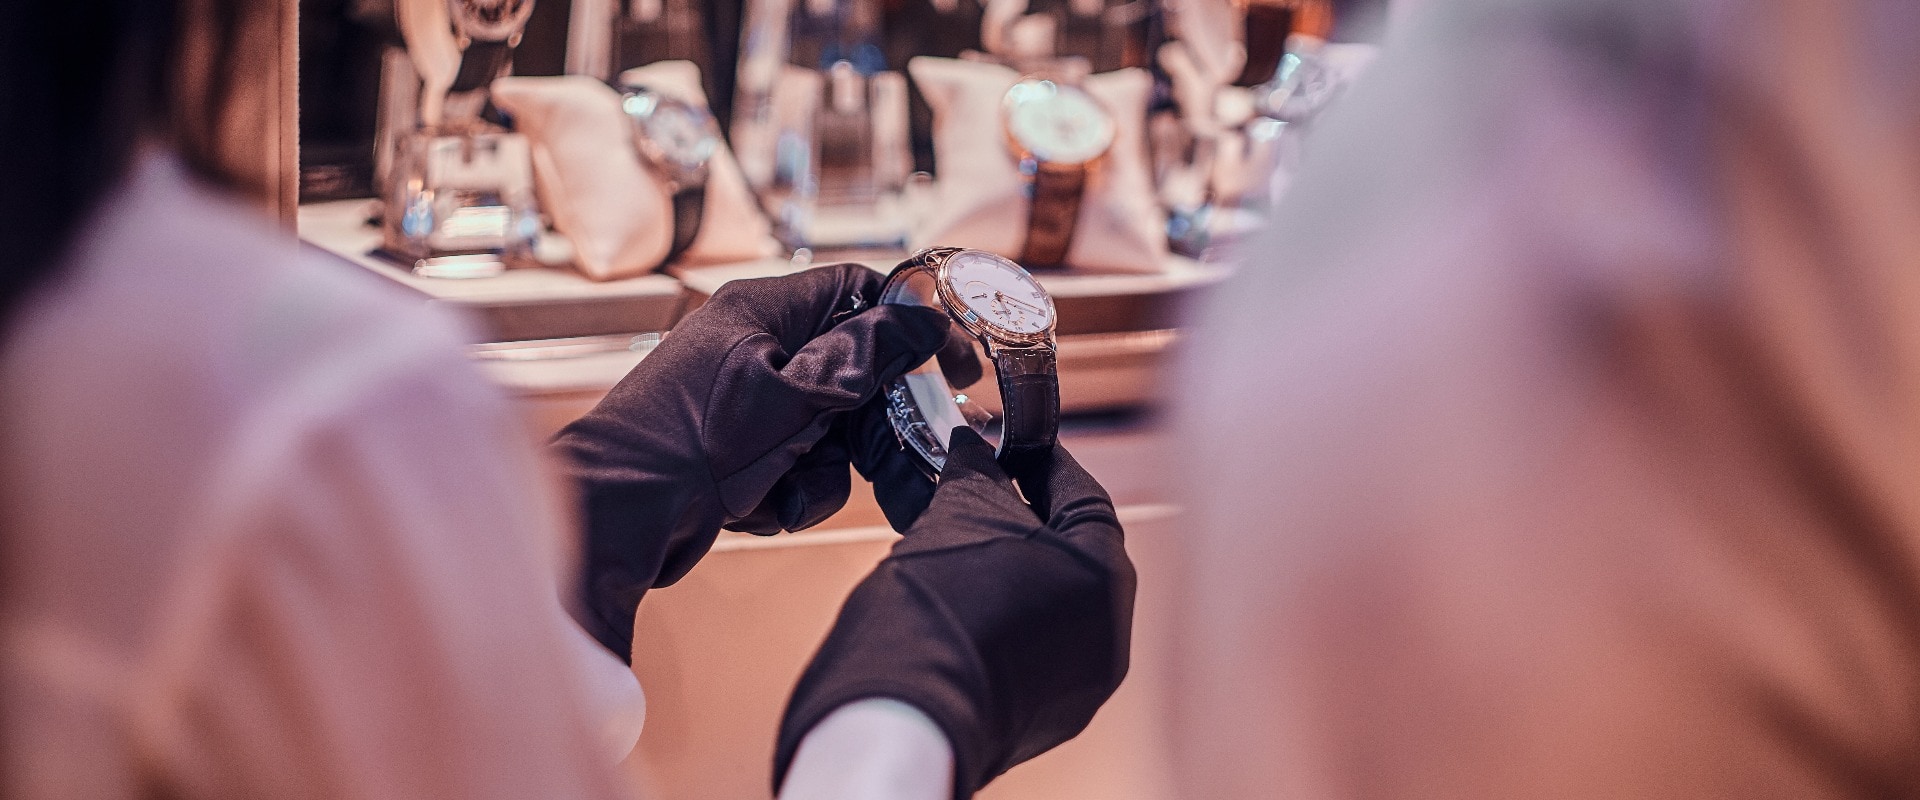 Verkäuferin mit schwarzen Handschuhen zeigt teure Uhr für einen Kunden